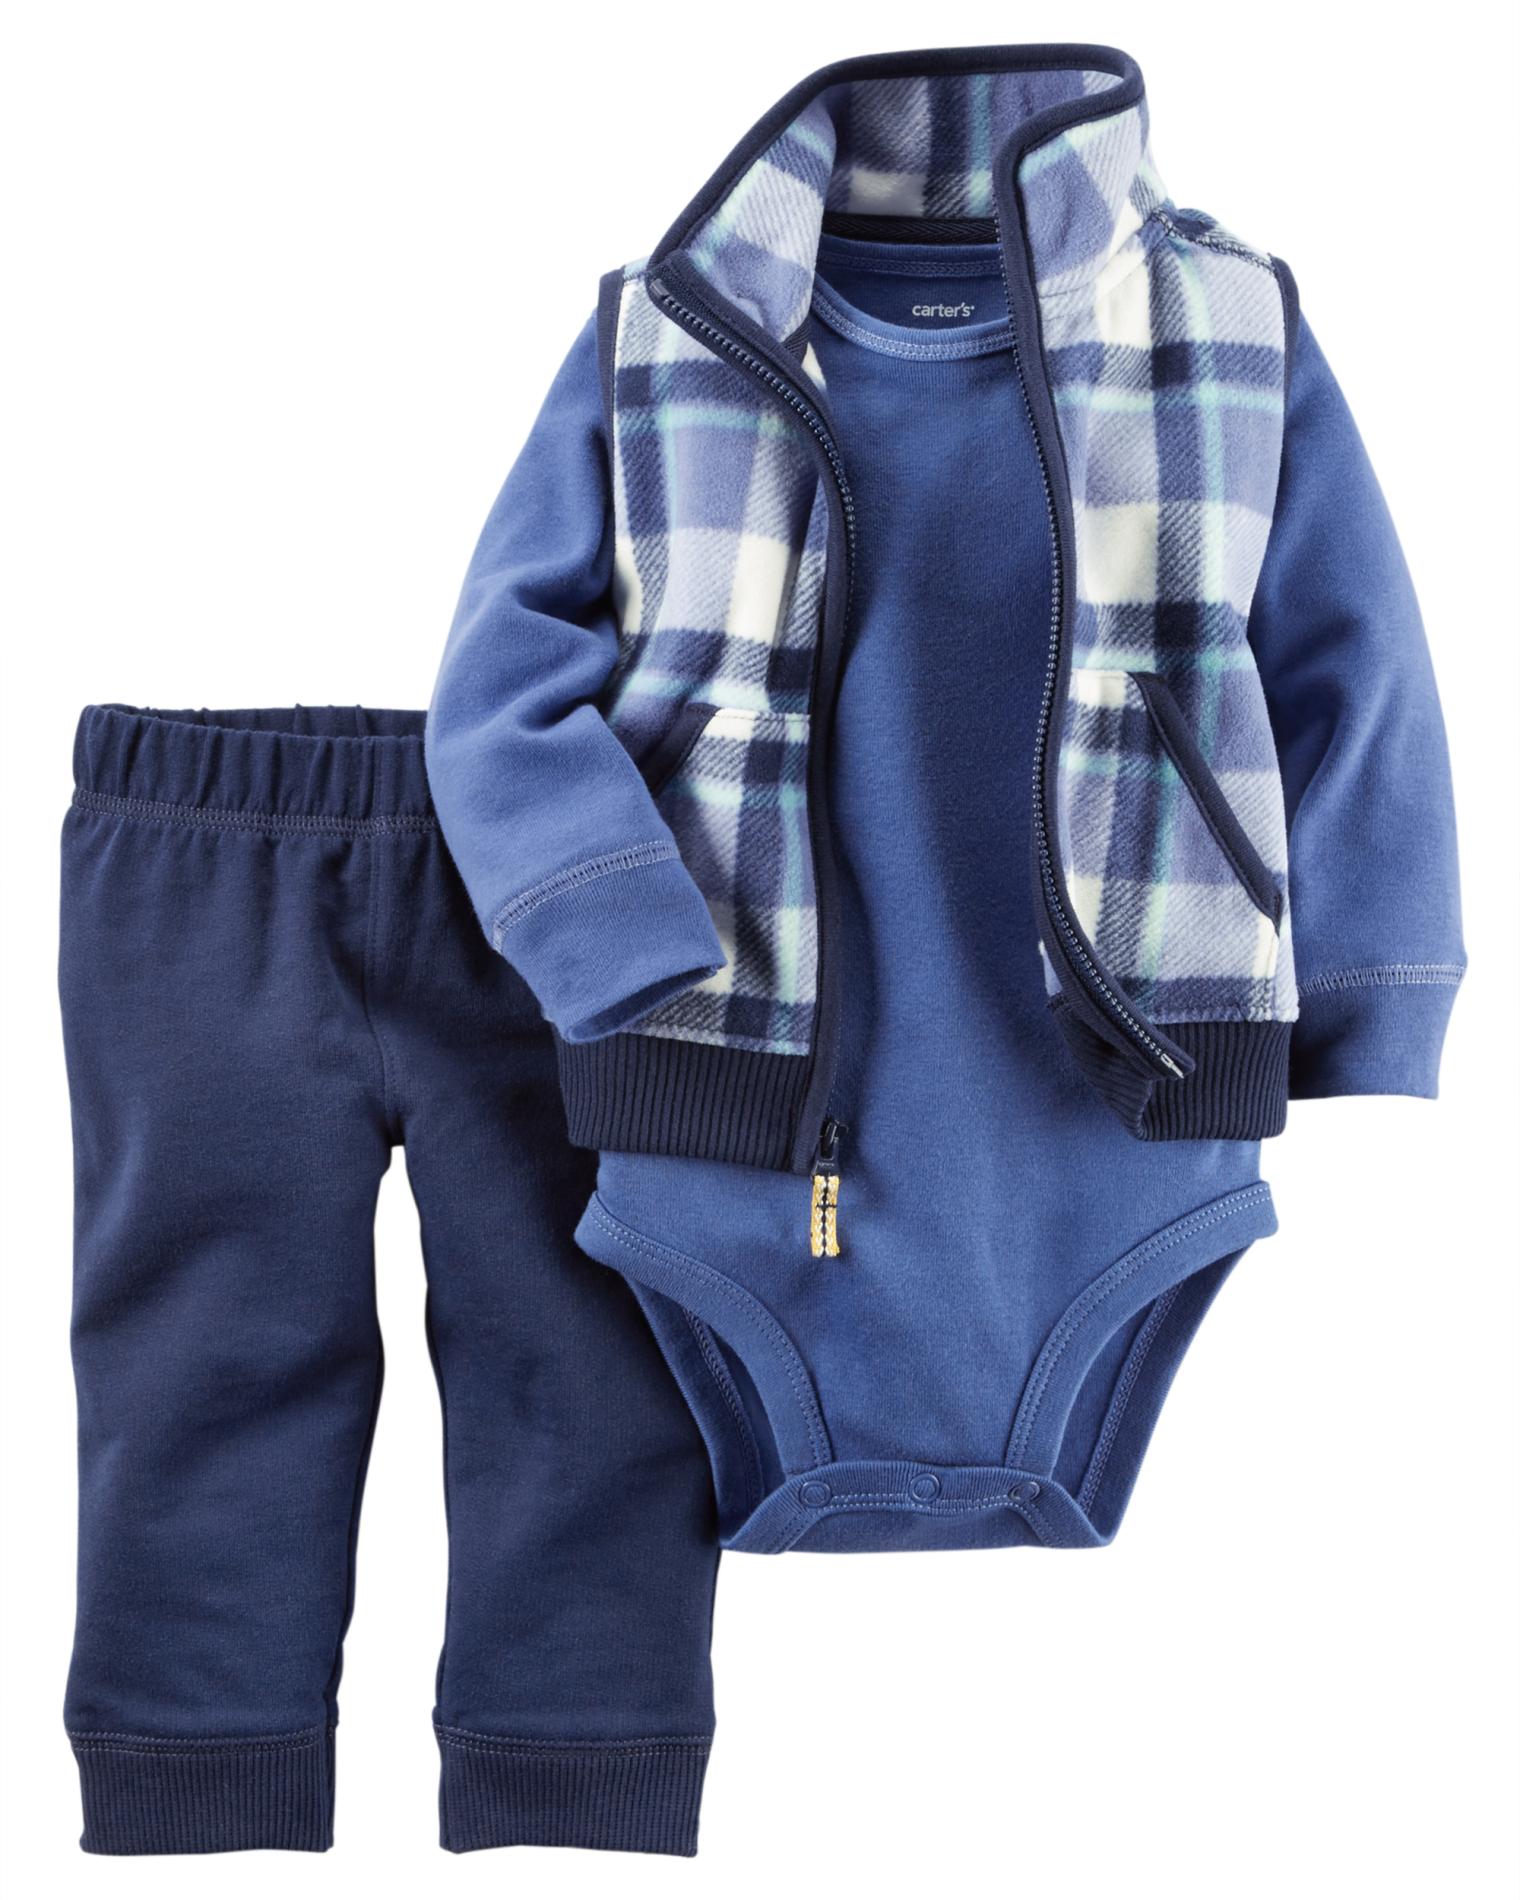 Carter's Newborn & Infant Boys' Fleece Vest, Bodysuit & Pants - Plaid